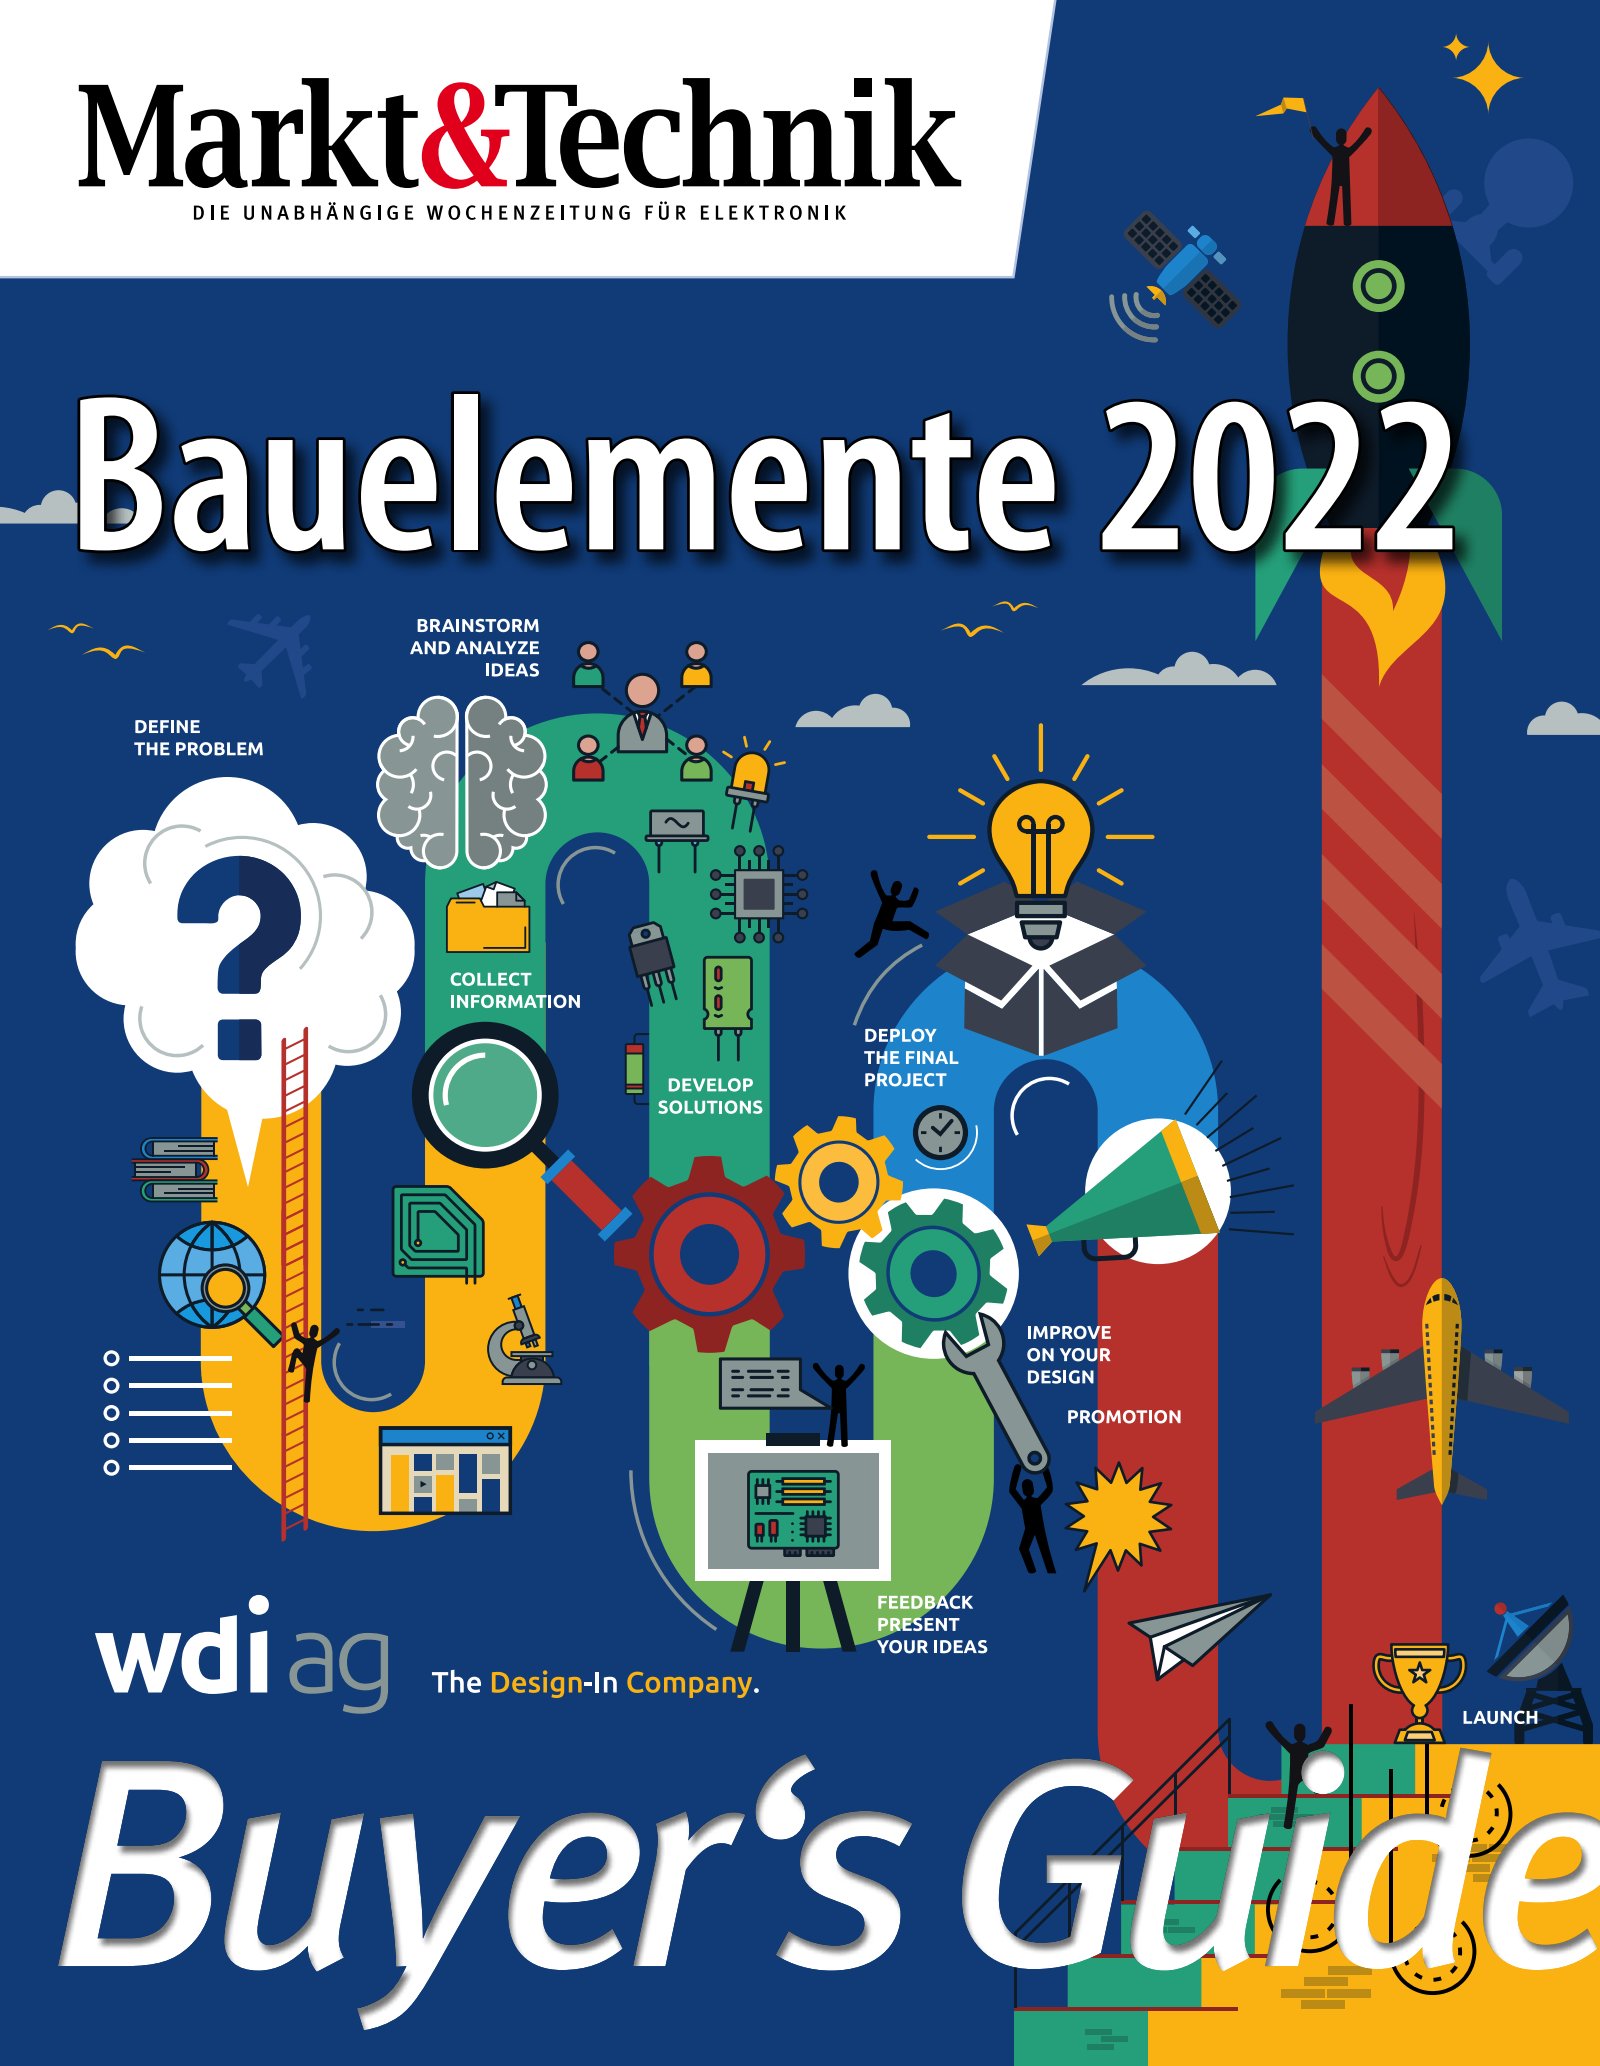 Markt&Technik Trend-Guide Buyers-Guide Bauelemente 2021 Digital